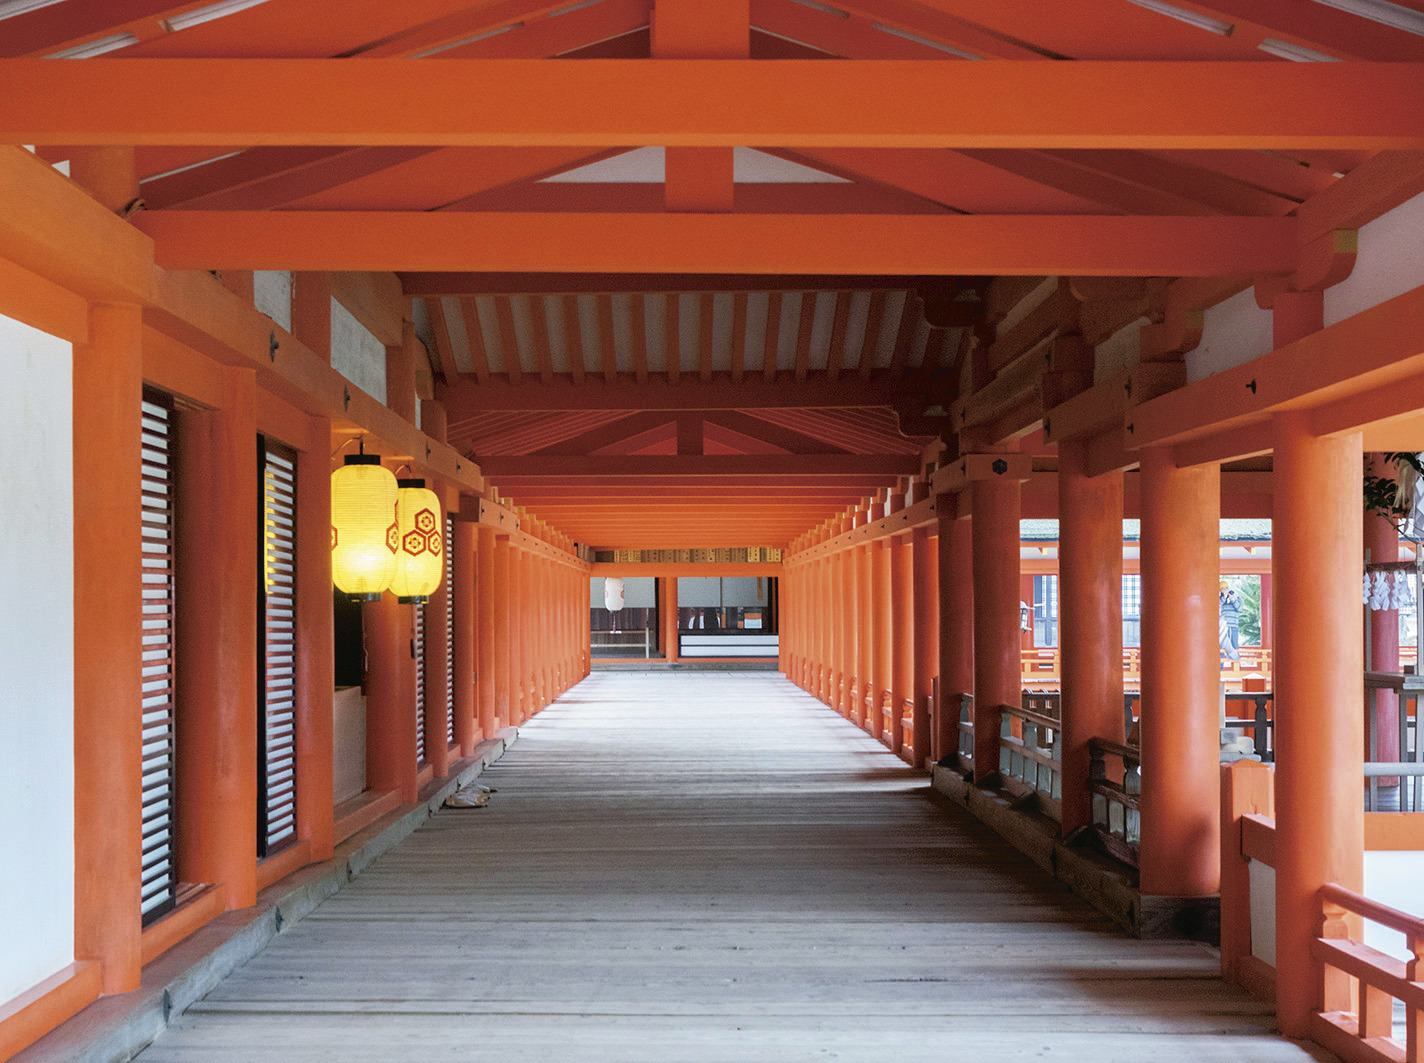 客神社本殿から中央にある嚴島神社御本社へとつながる東廻廊。海上にある嚴島神社は、社殿を幅4m、長さ約270mの廻廊が結んでいる。床板には、高潮で押し上がる海水を逃がすための隙間がある。